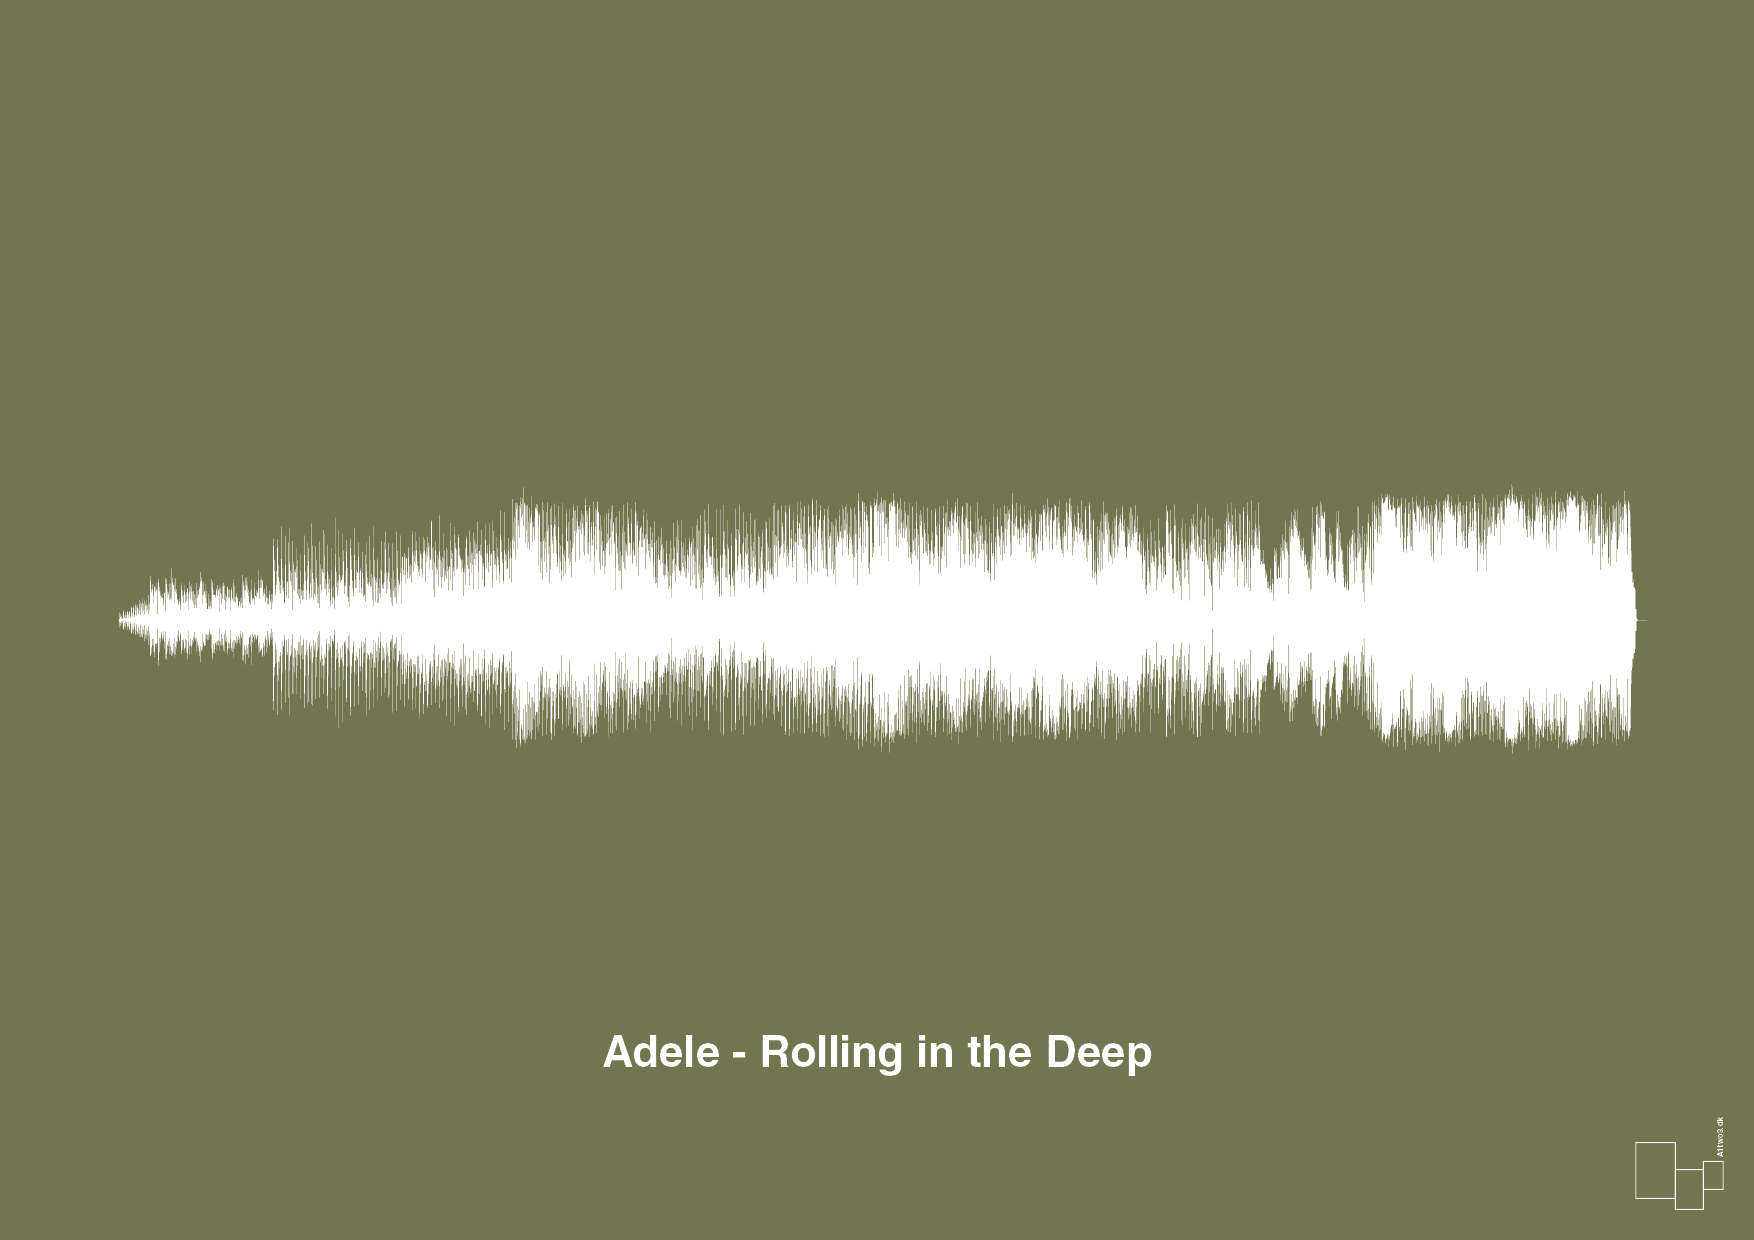 adele - rolling in the deep - Plakat med Musik i Secret Meadow